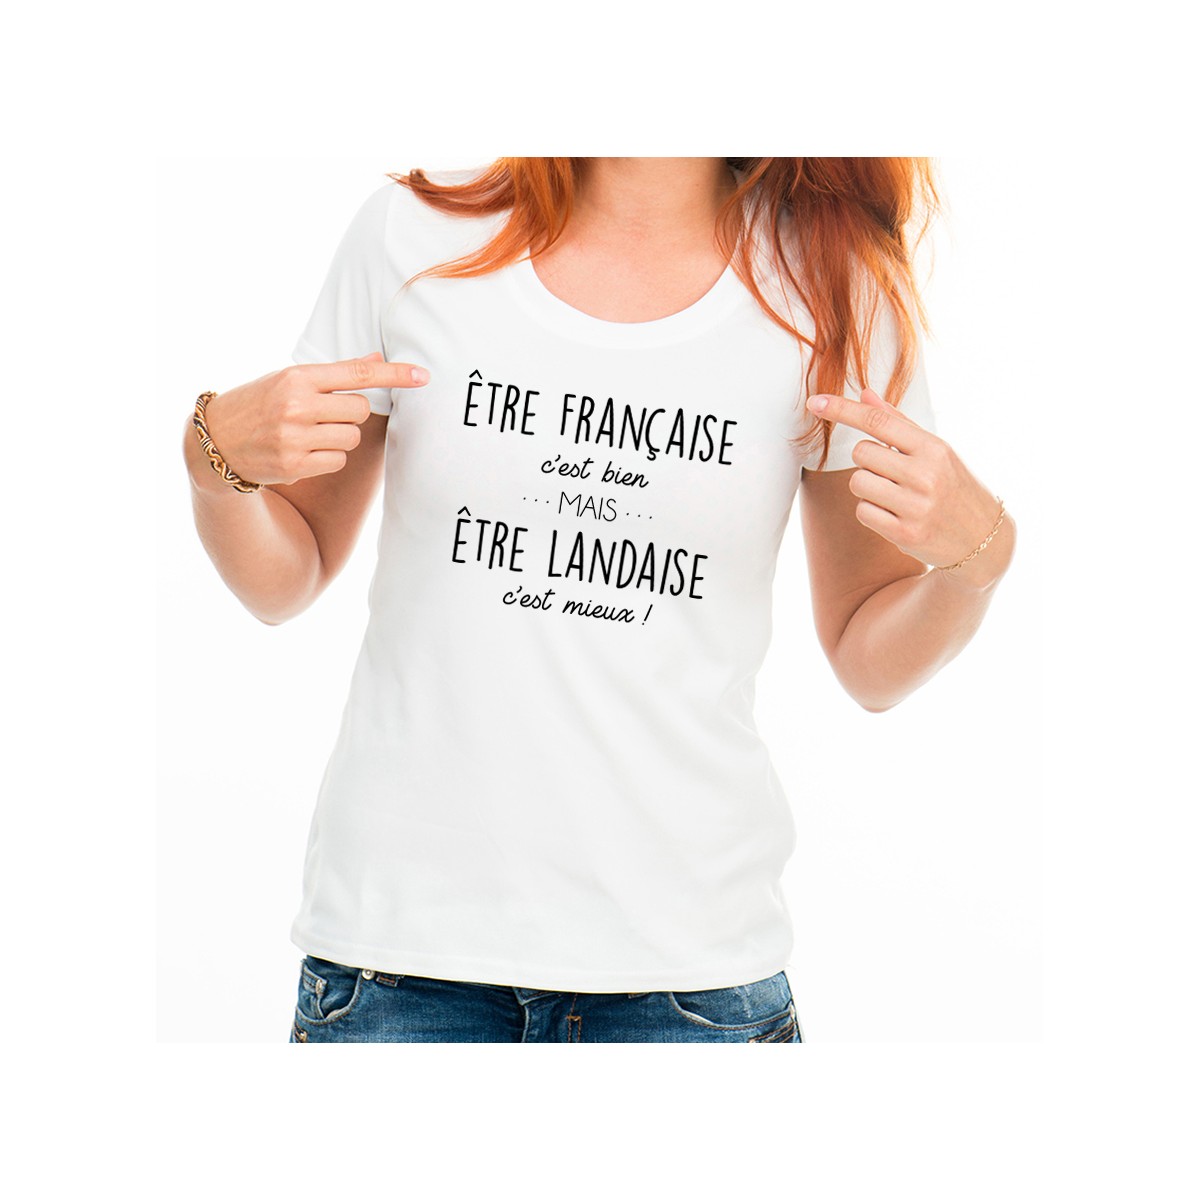 T-shirt Être Landaise c'est mieux